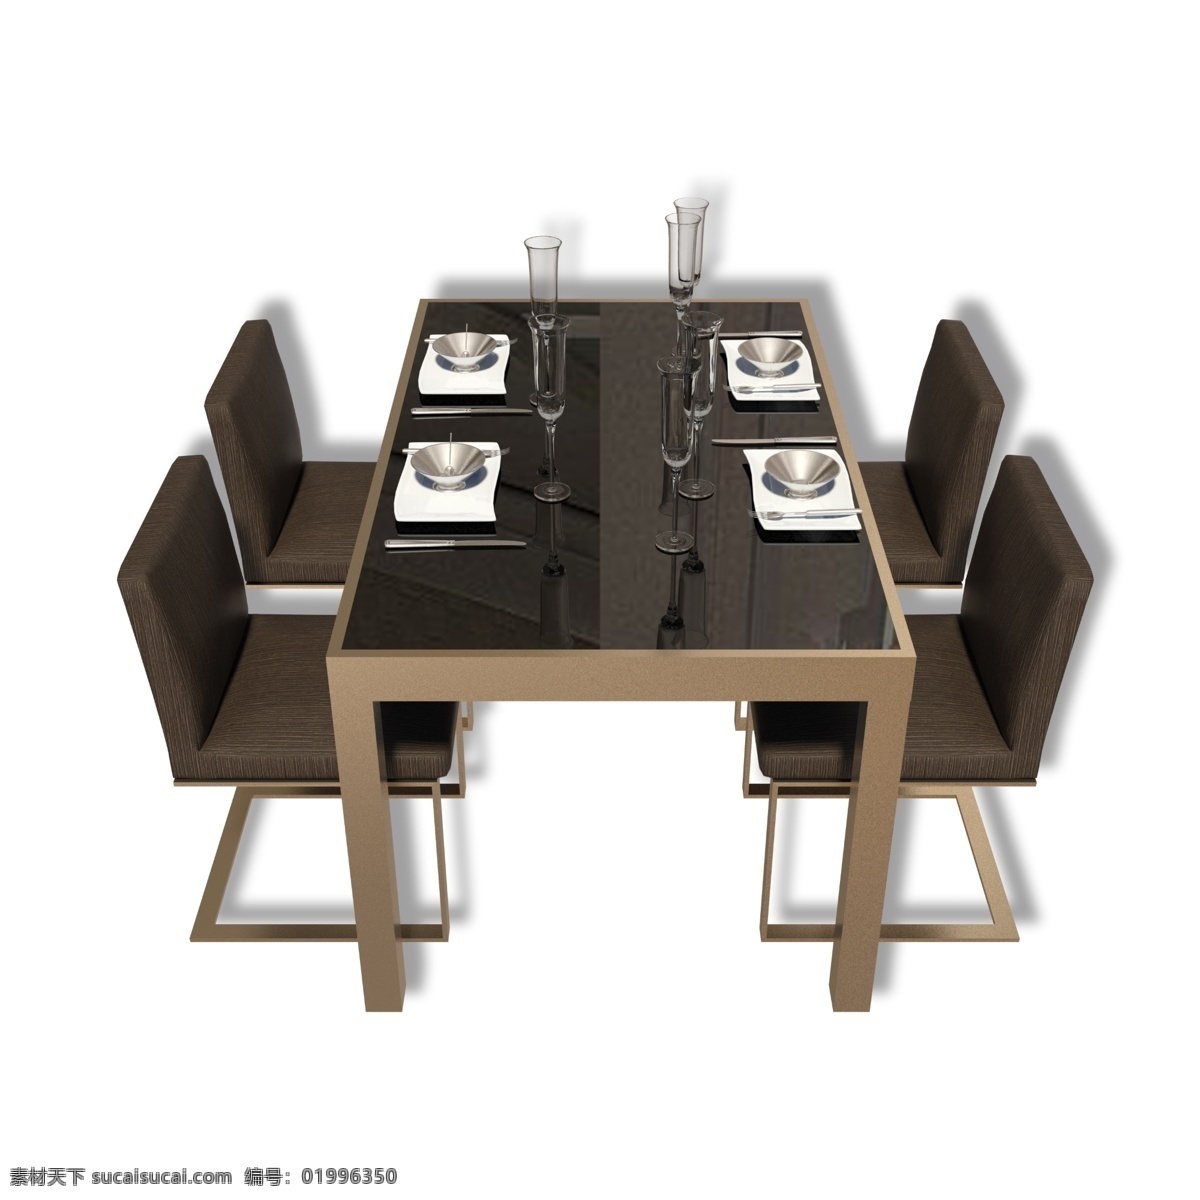 现代餐桌餐椅 餐桌 餐椅 桌子 椅子 饭桌 餐饮 家具